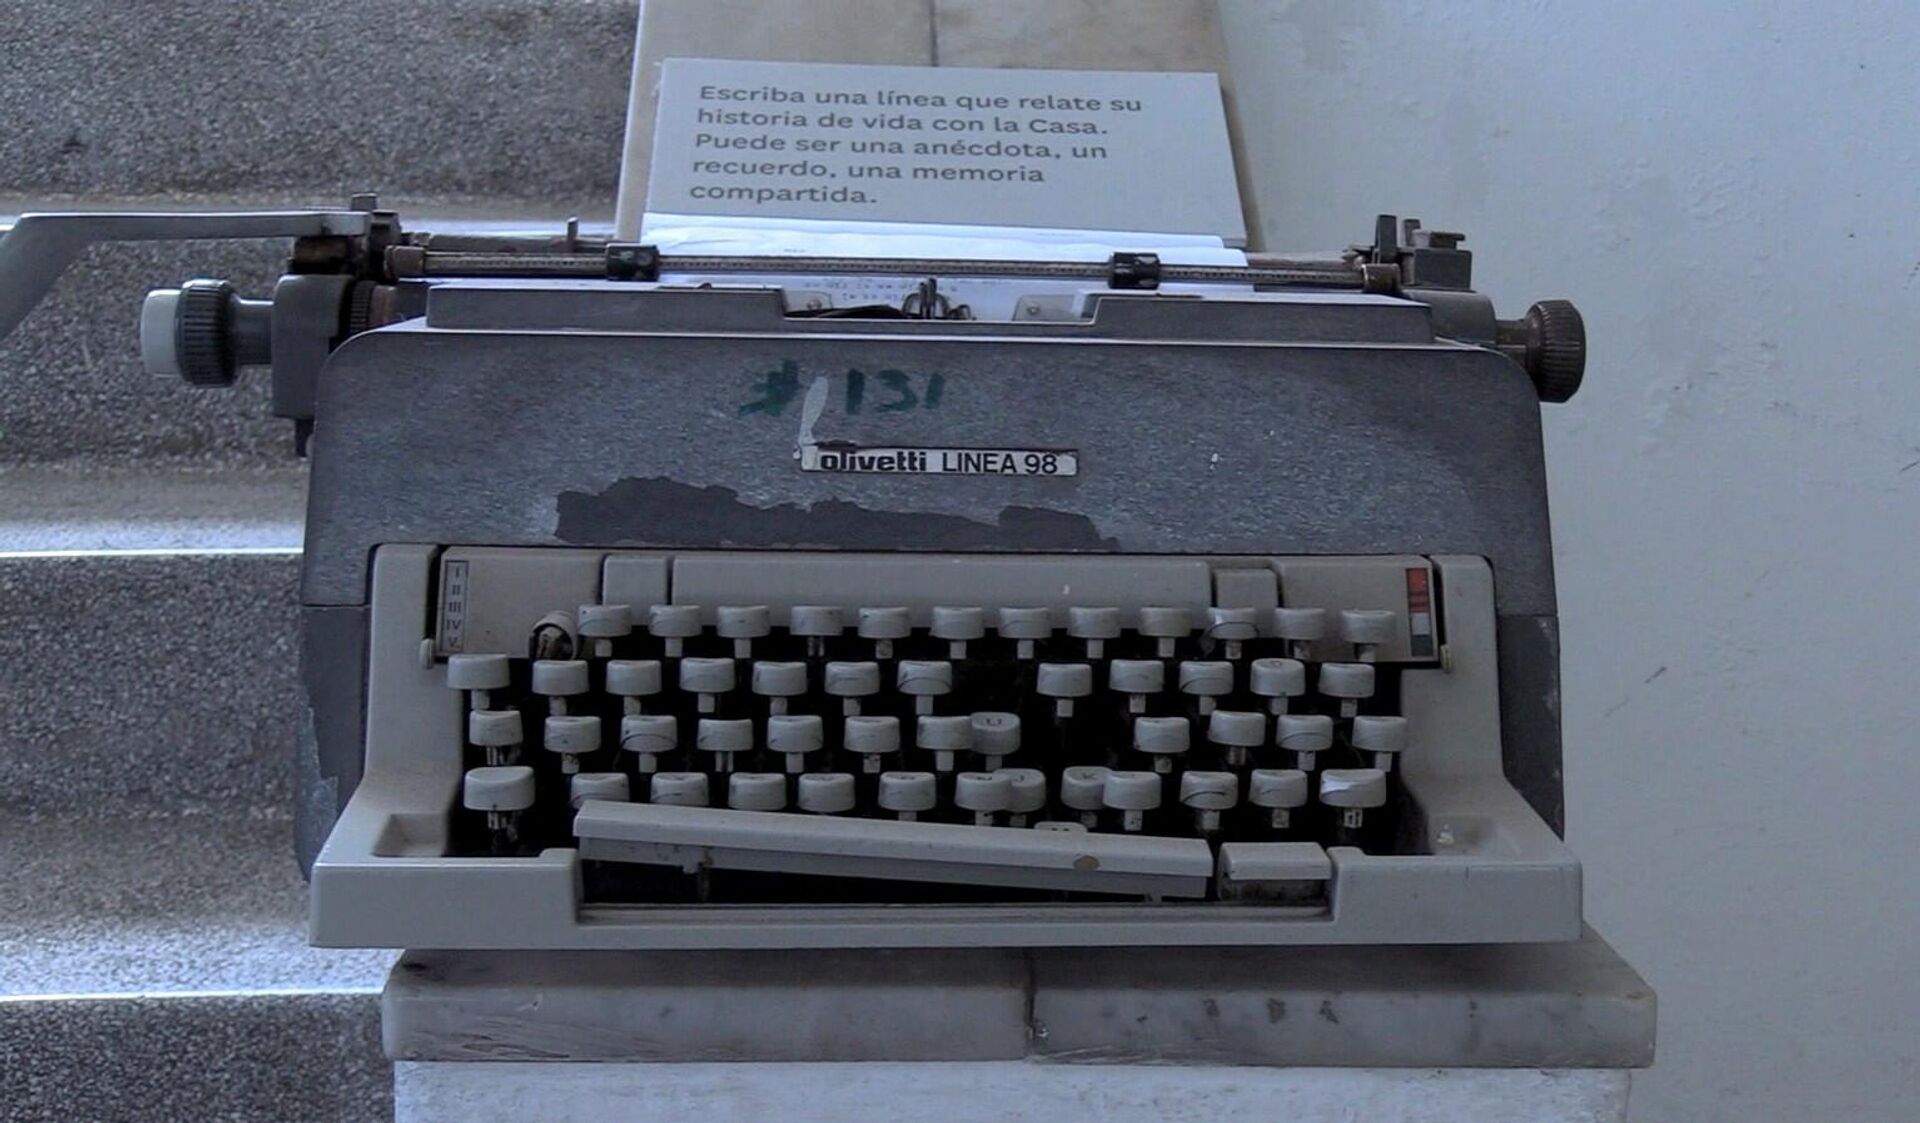 Una de las máquinas de escribir utilizadas en la Casa en años anteriores - Sputnik Mundo, 1920, 06.04.2021